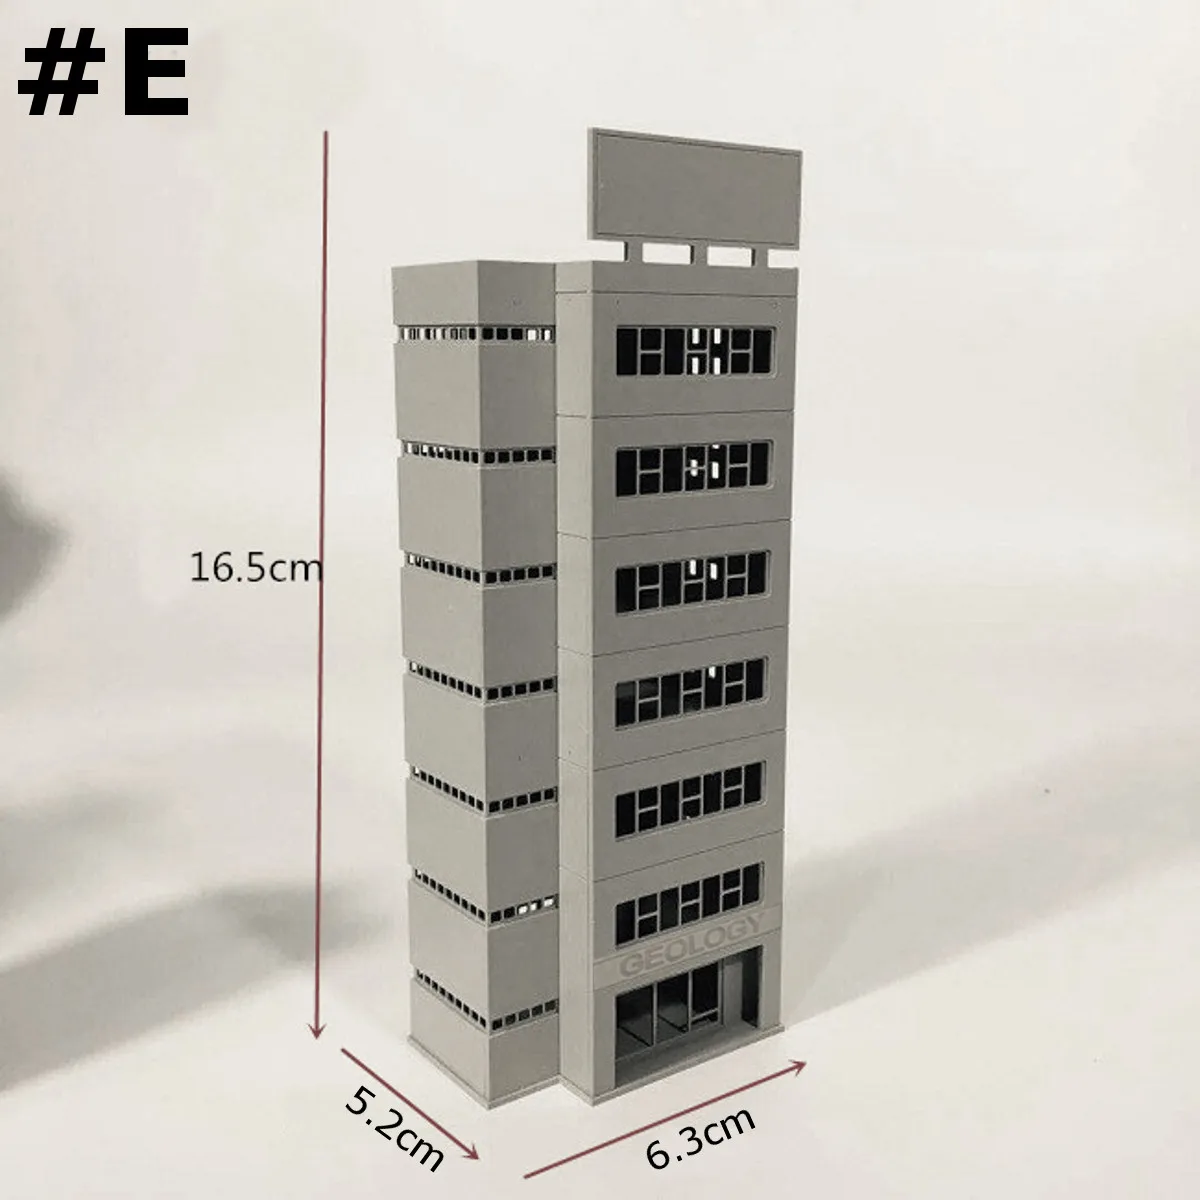 1/150 N измерительный прибор сцена Outland модель здания современный дом для квартиры офиса модели игрушки ручной работы сборки микро пейзаж подарок - Цвет: E